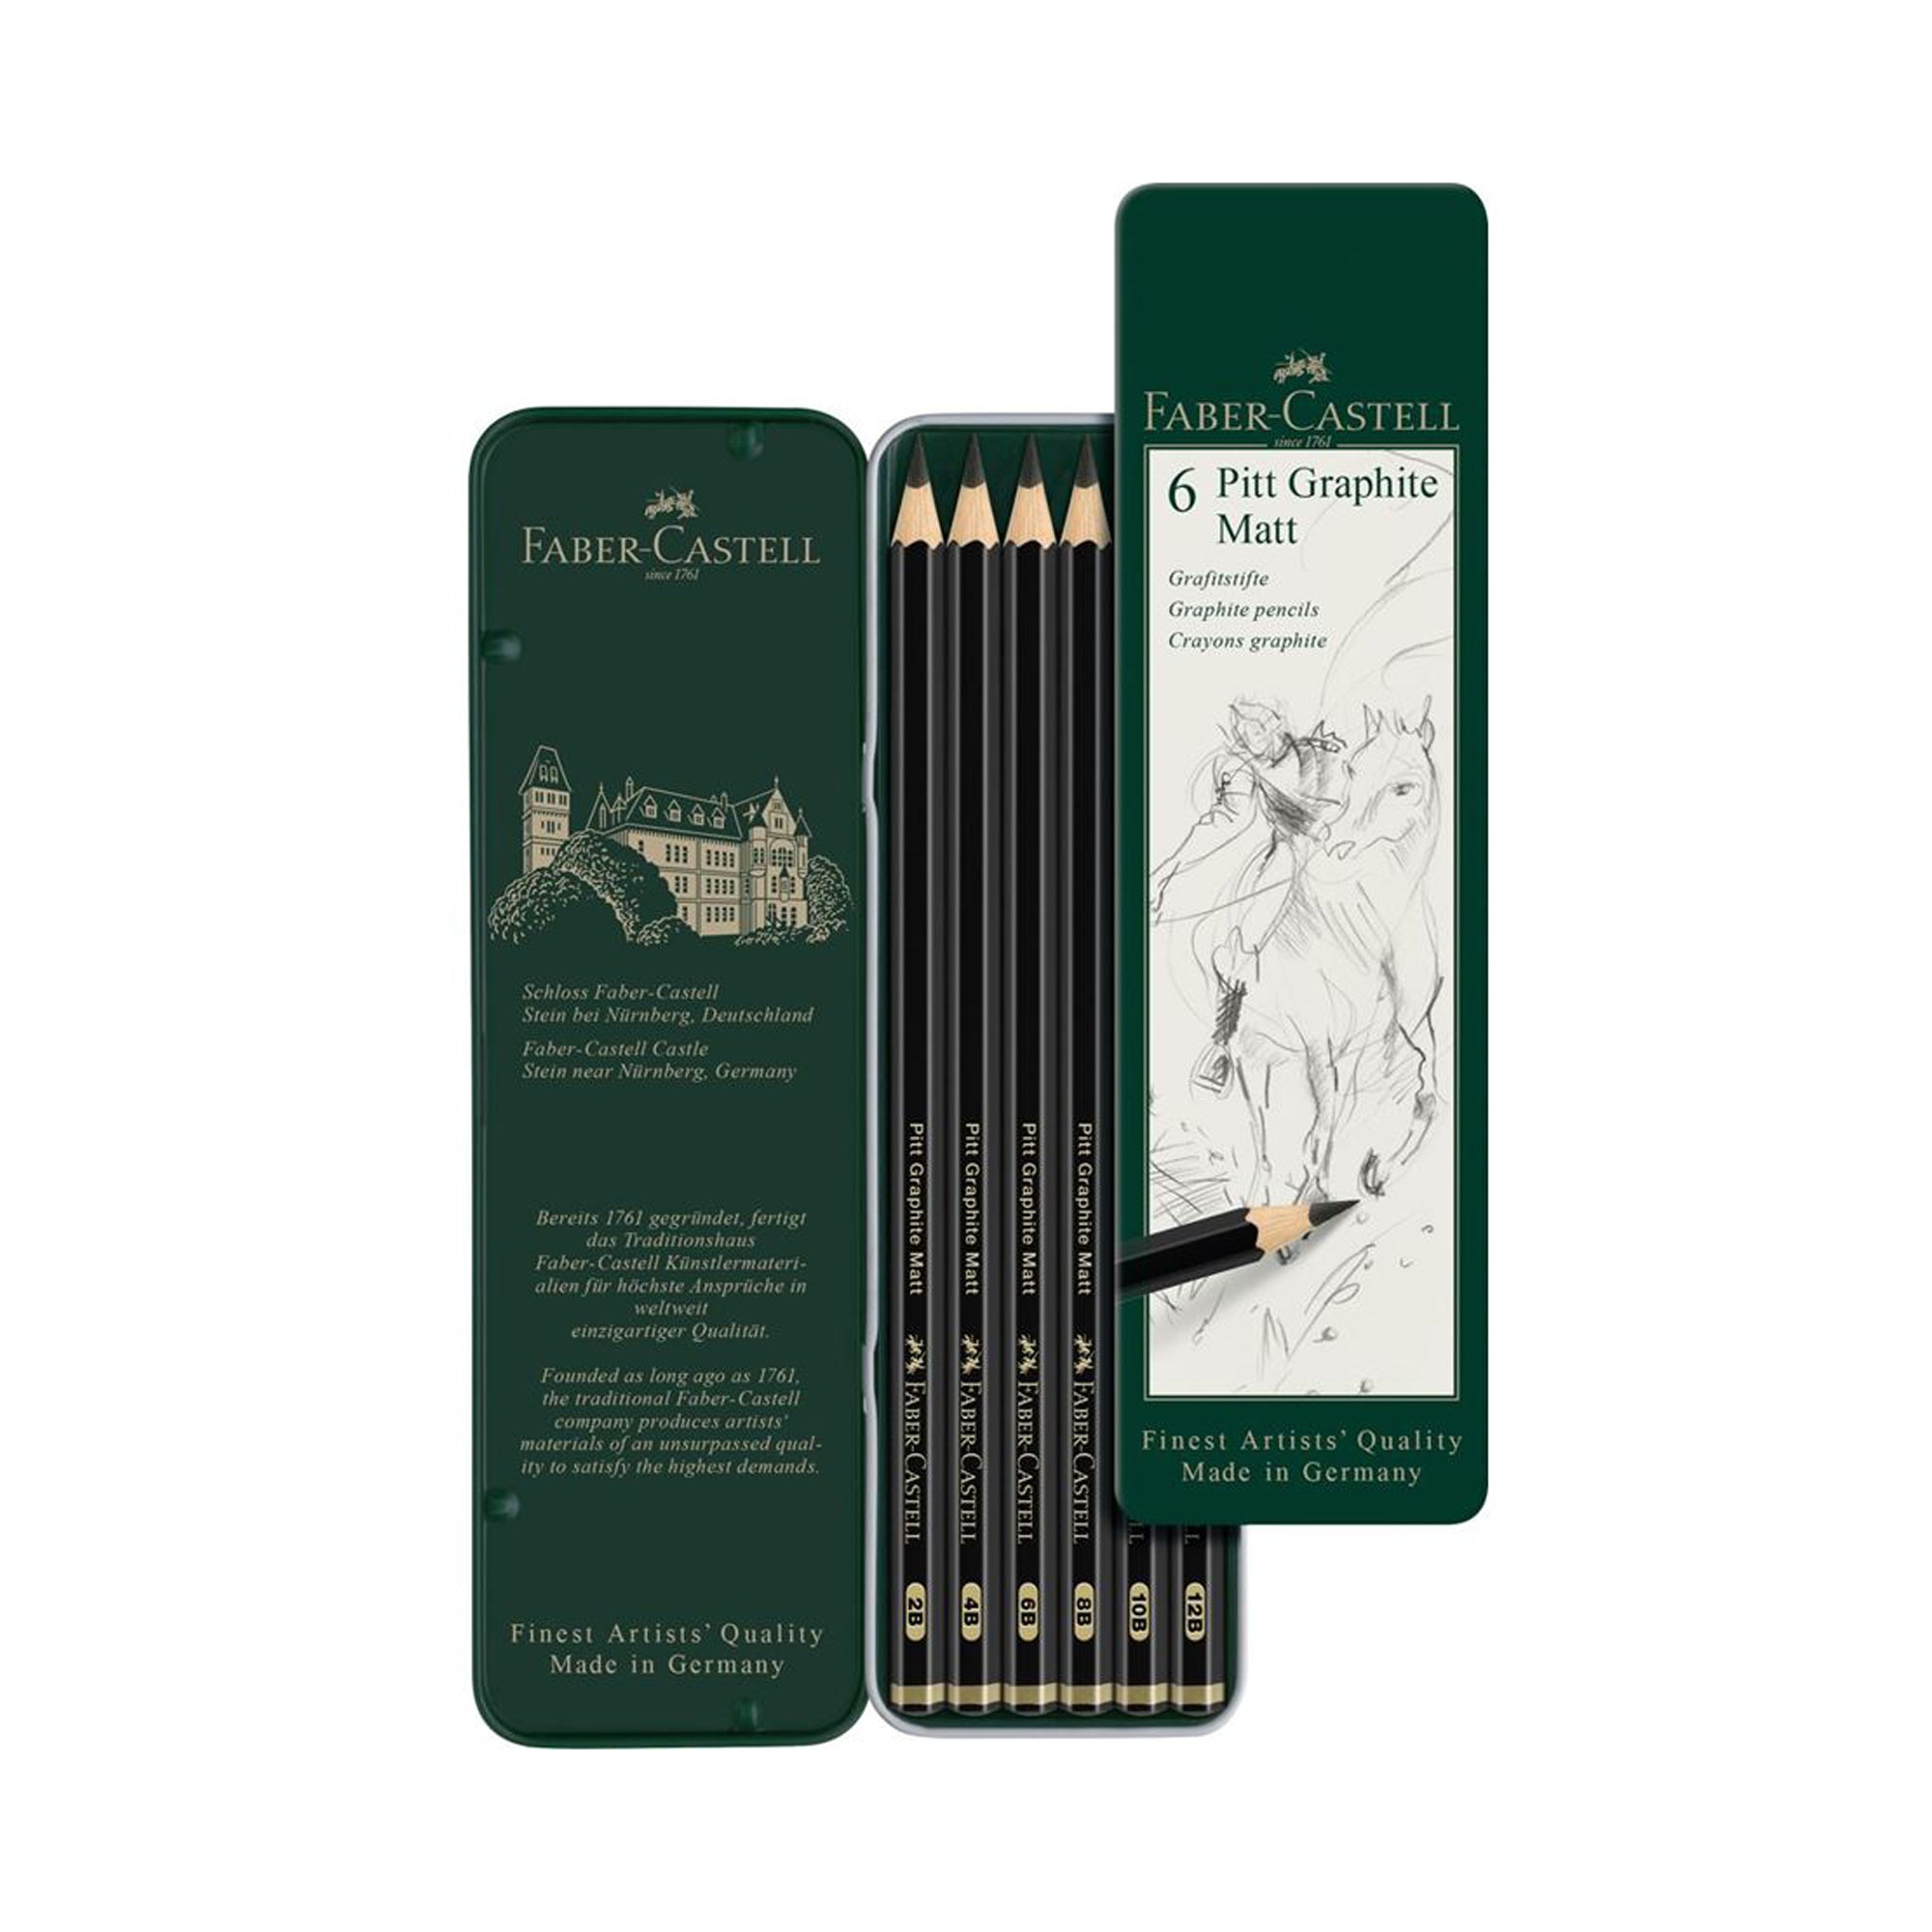 Faber-Castell Pitt Graphite Matt Pencils Tins - Set of 6